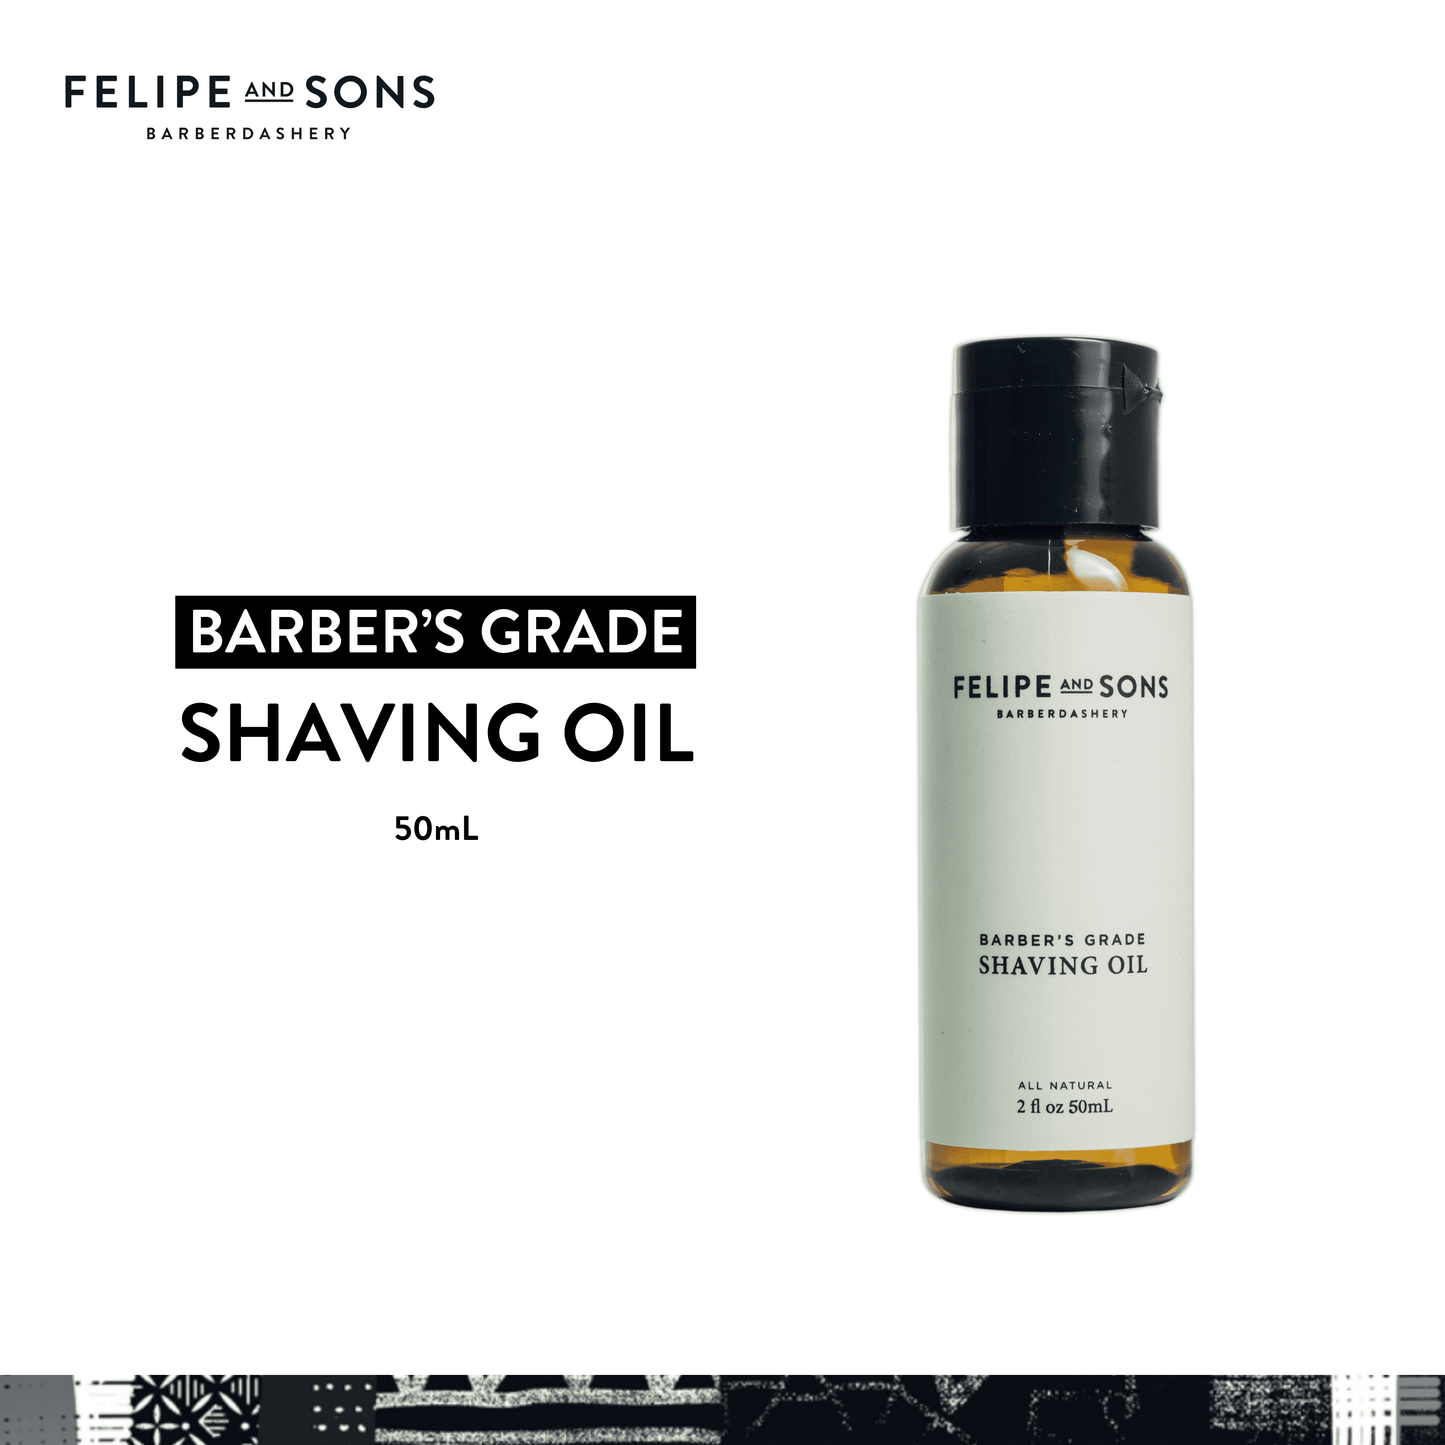 Felipe and Sons Barber’s Grade Shaving Oil 50 mL